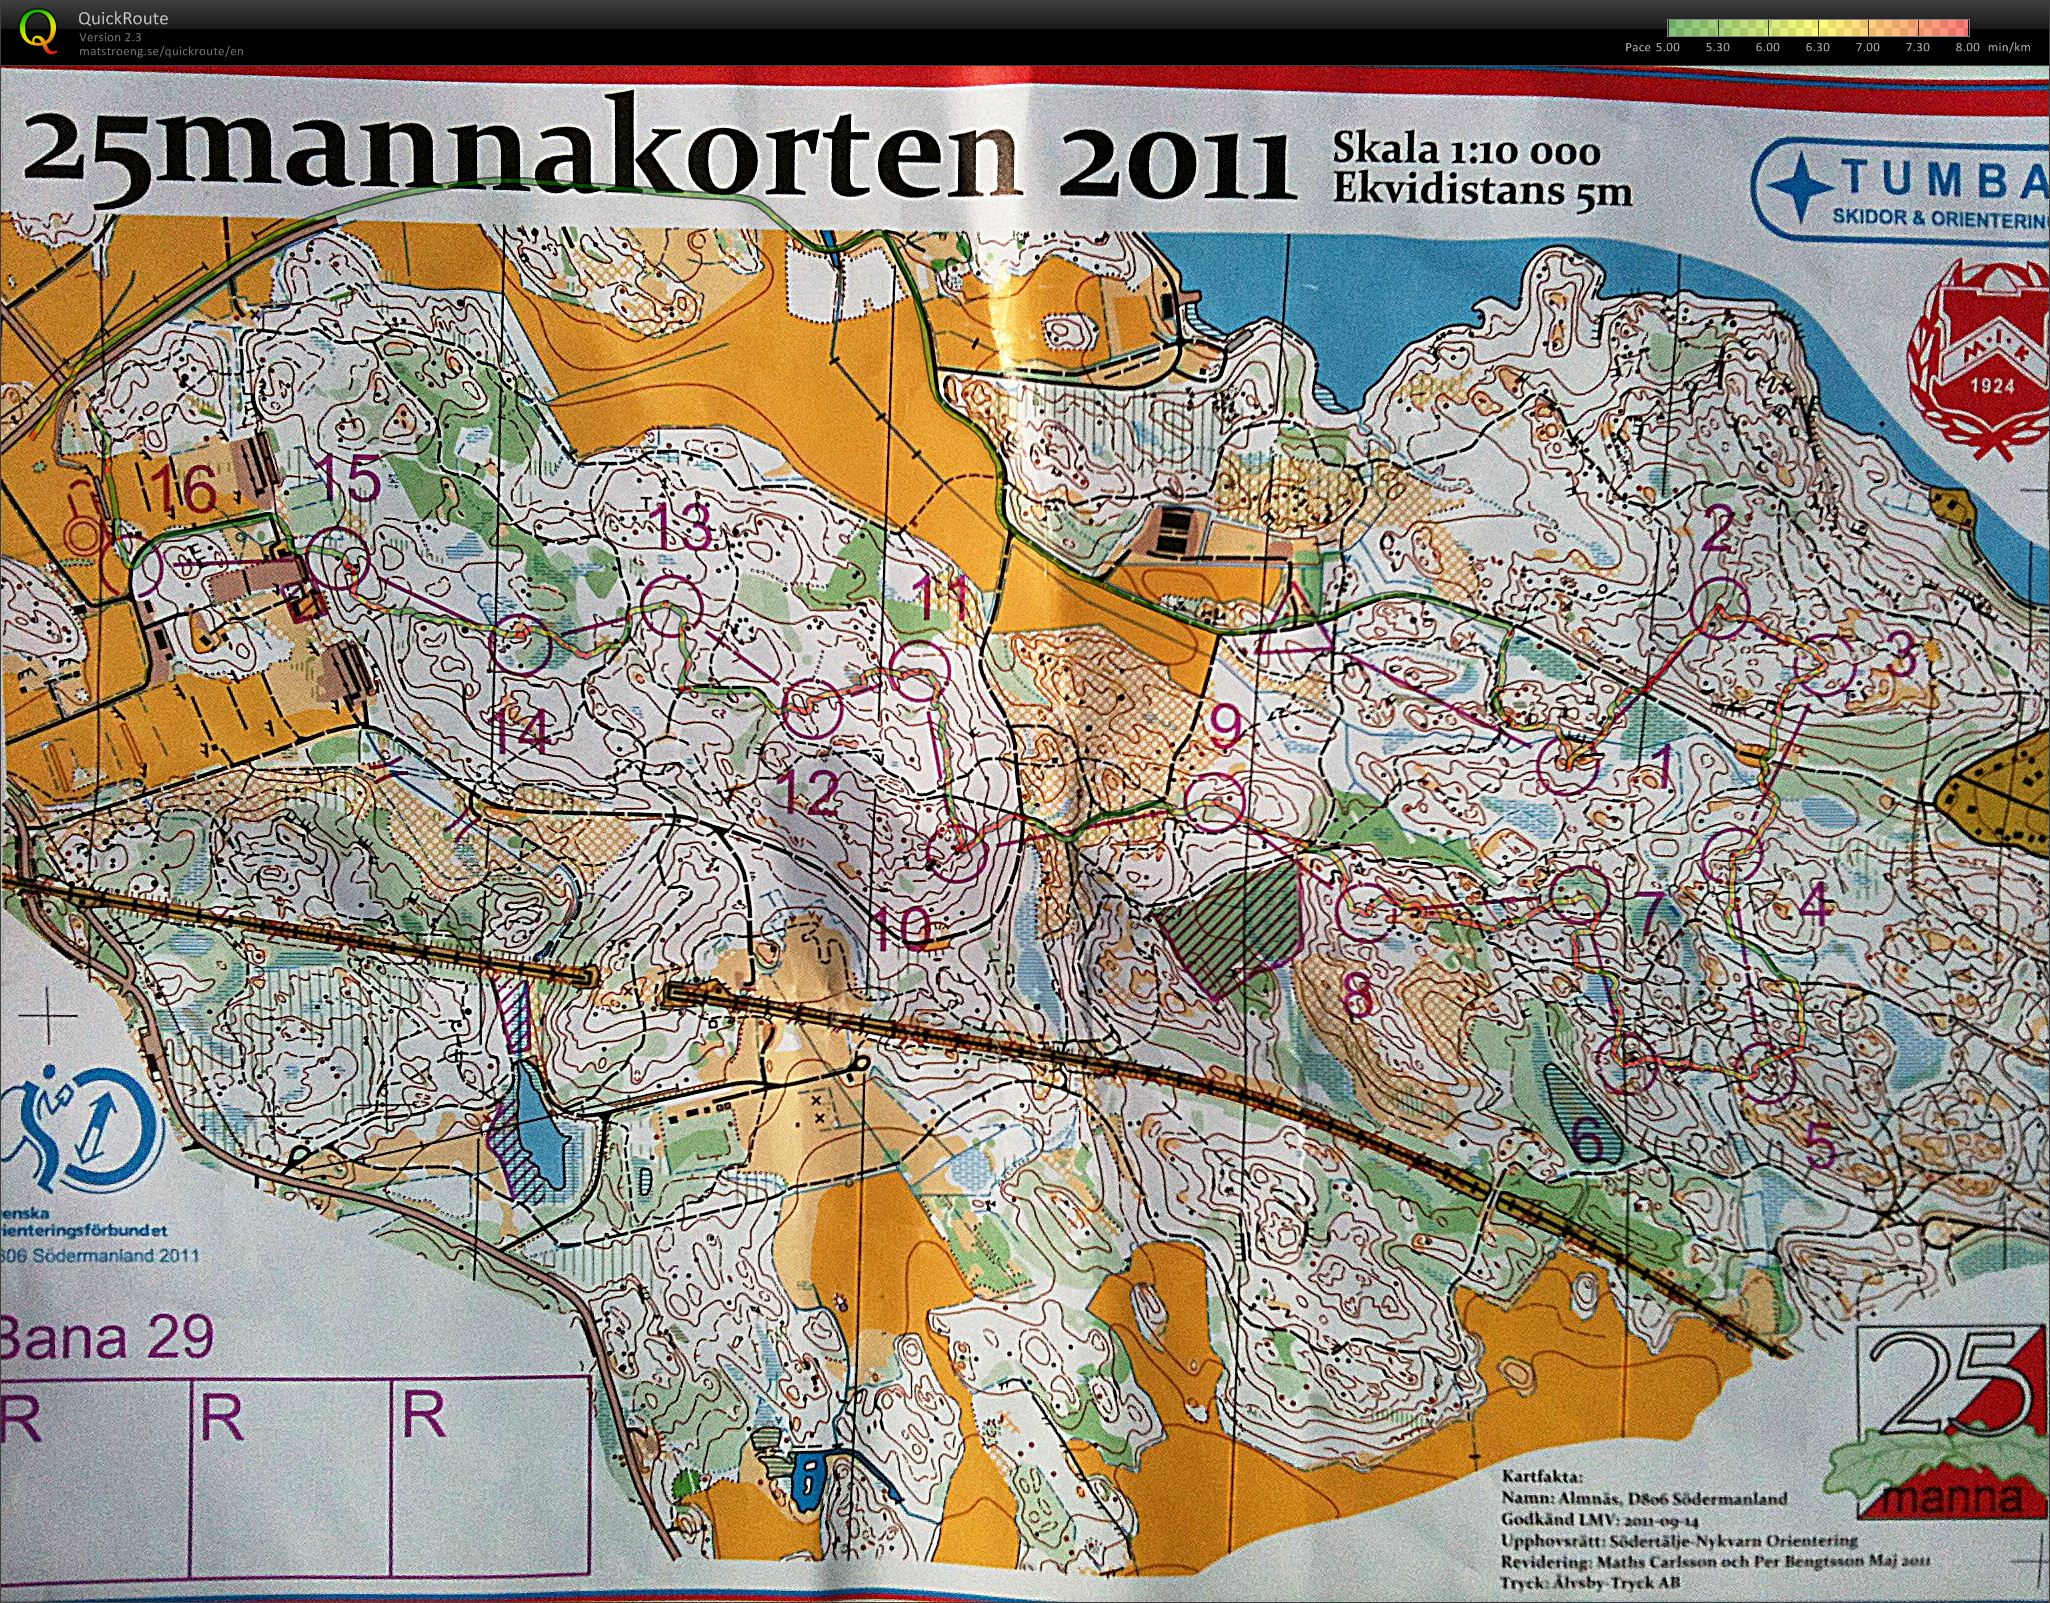 25mannakorten - H45 (09.10.2011)